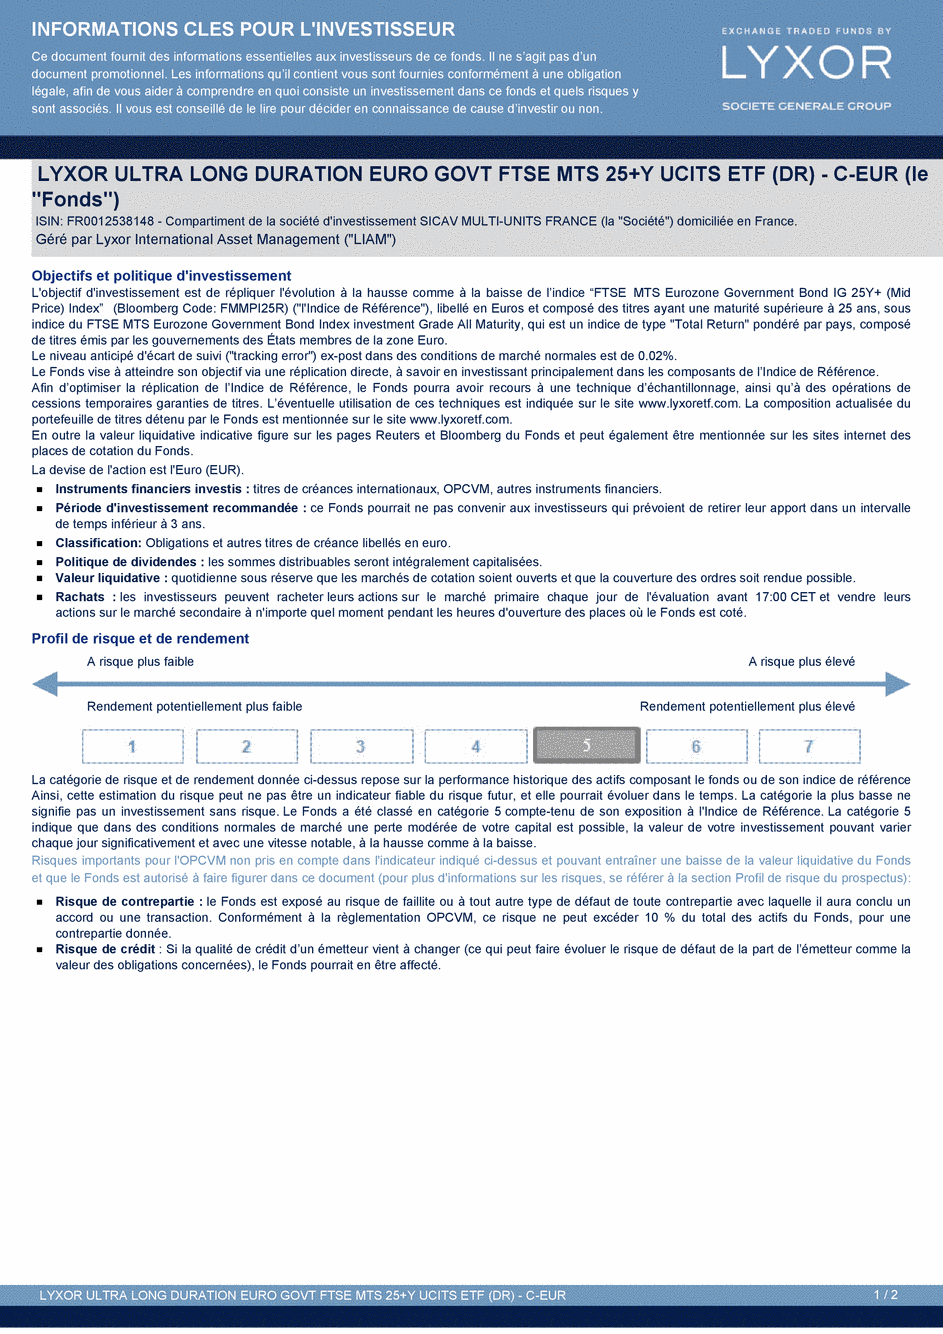 DICI LYXOR ULTRA LONG DURATION EURO GOVT FTSE MTS 25+Y (DR) UCITS ETF - C-EUR - 26/03/2015 - Français